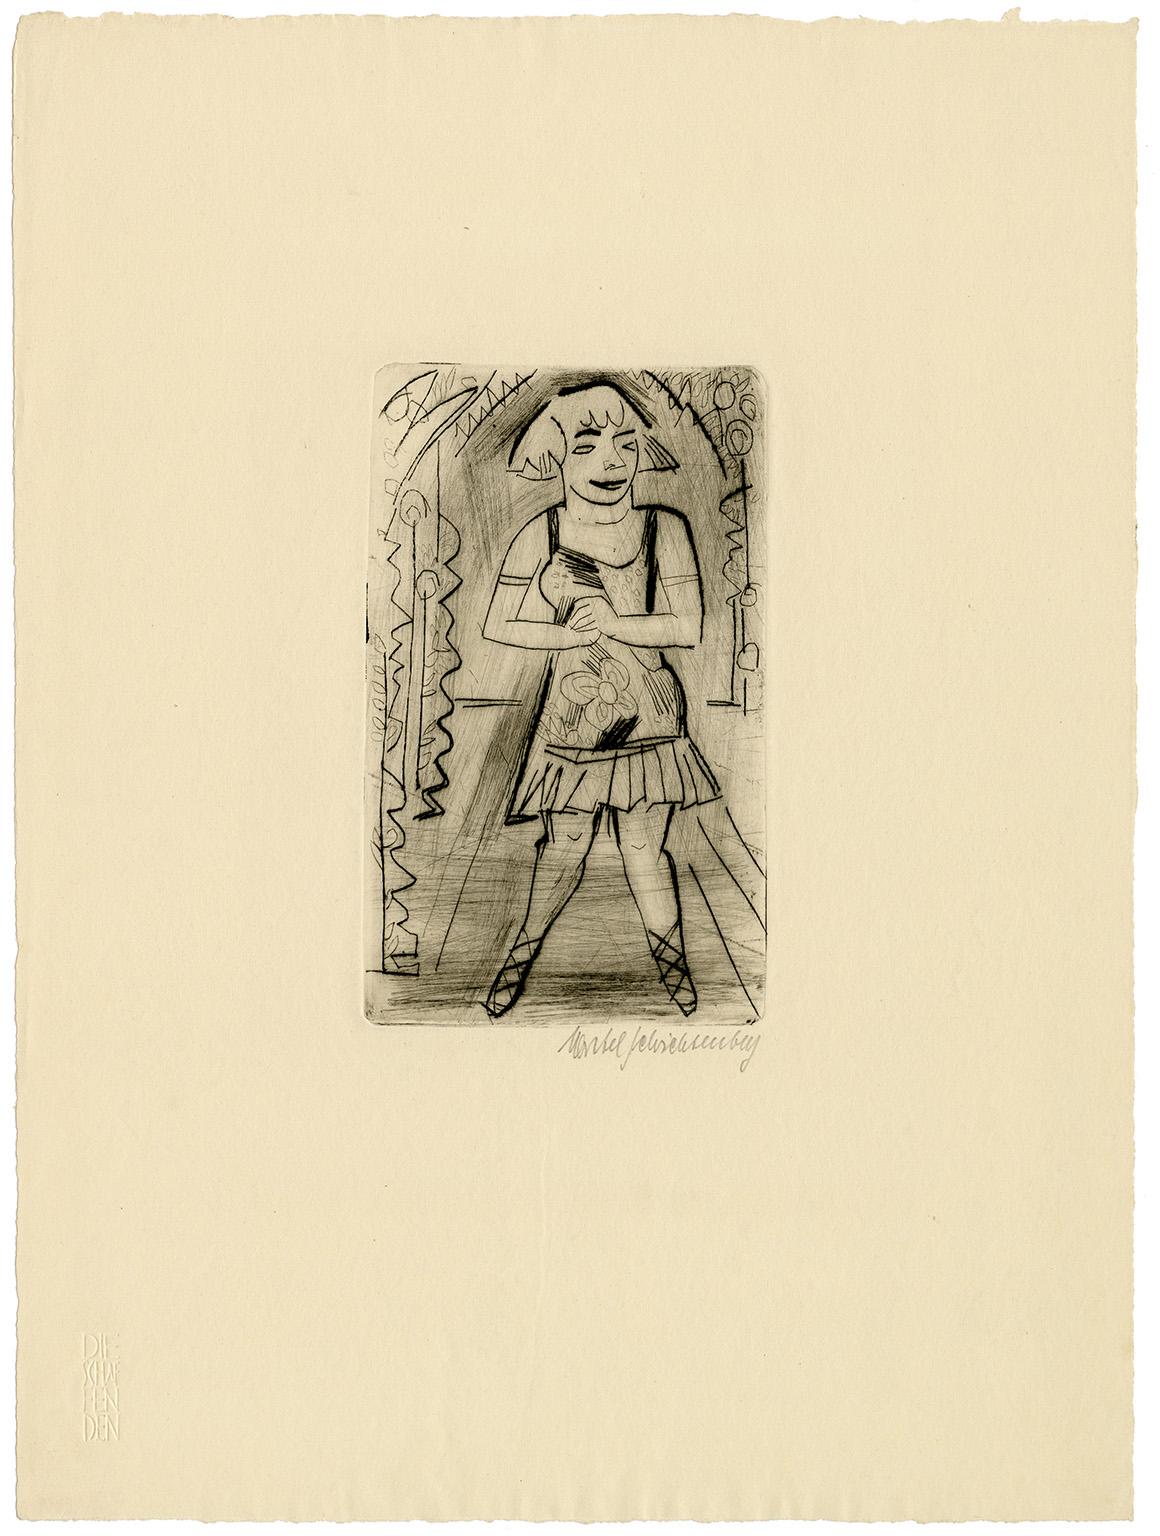 'Varietesoubrette, Schwalbennest' also Dancer — 1920s German Expressionism - Print by Martel Schwichtenberg